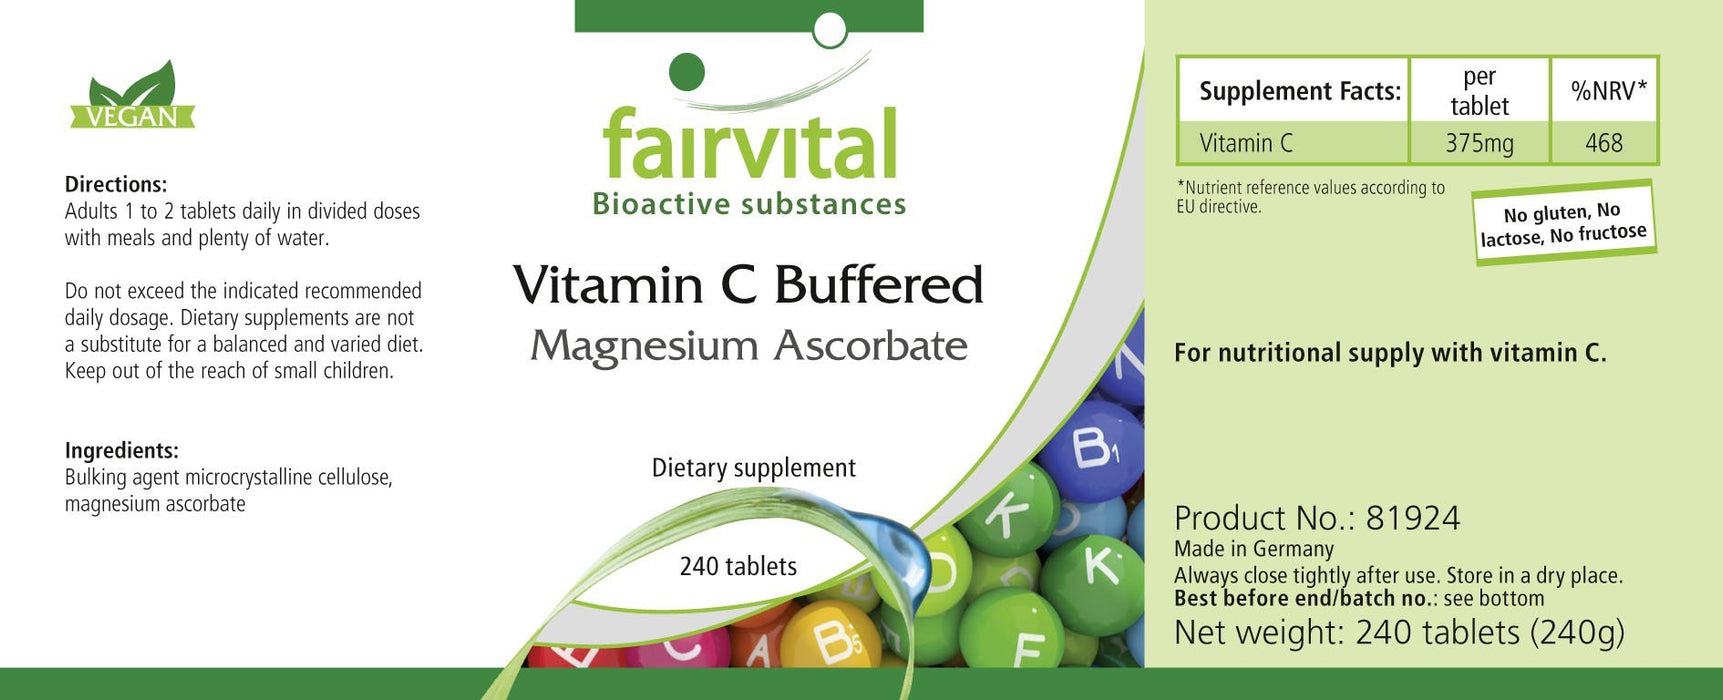 Buforowana witamina C w postaci askorbinianu magnezu - VEGAN - 240 tabletek - łatwa do przełknięcia